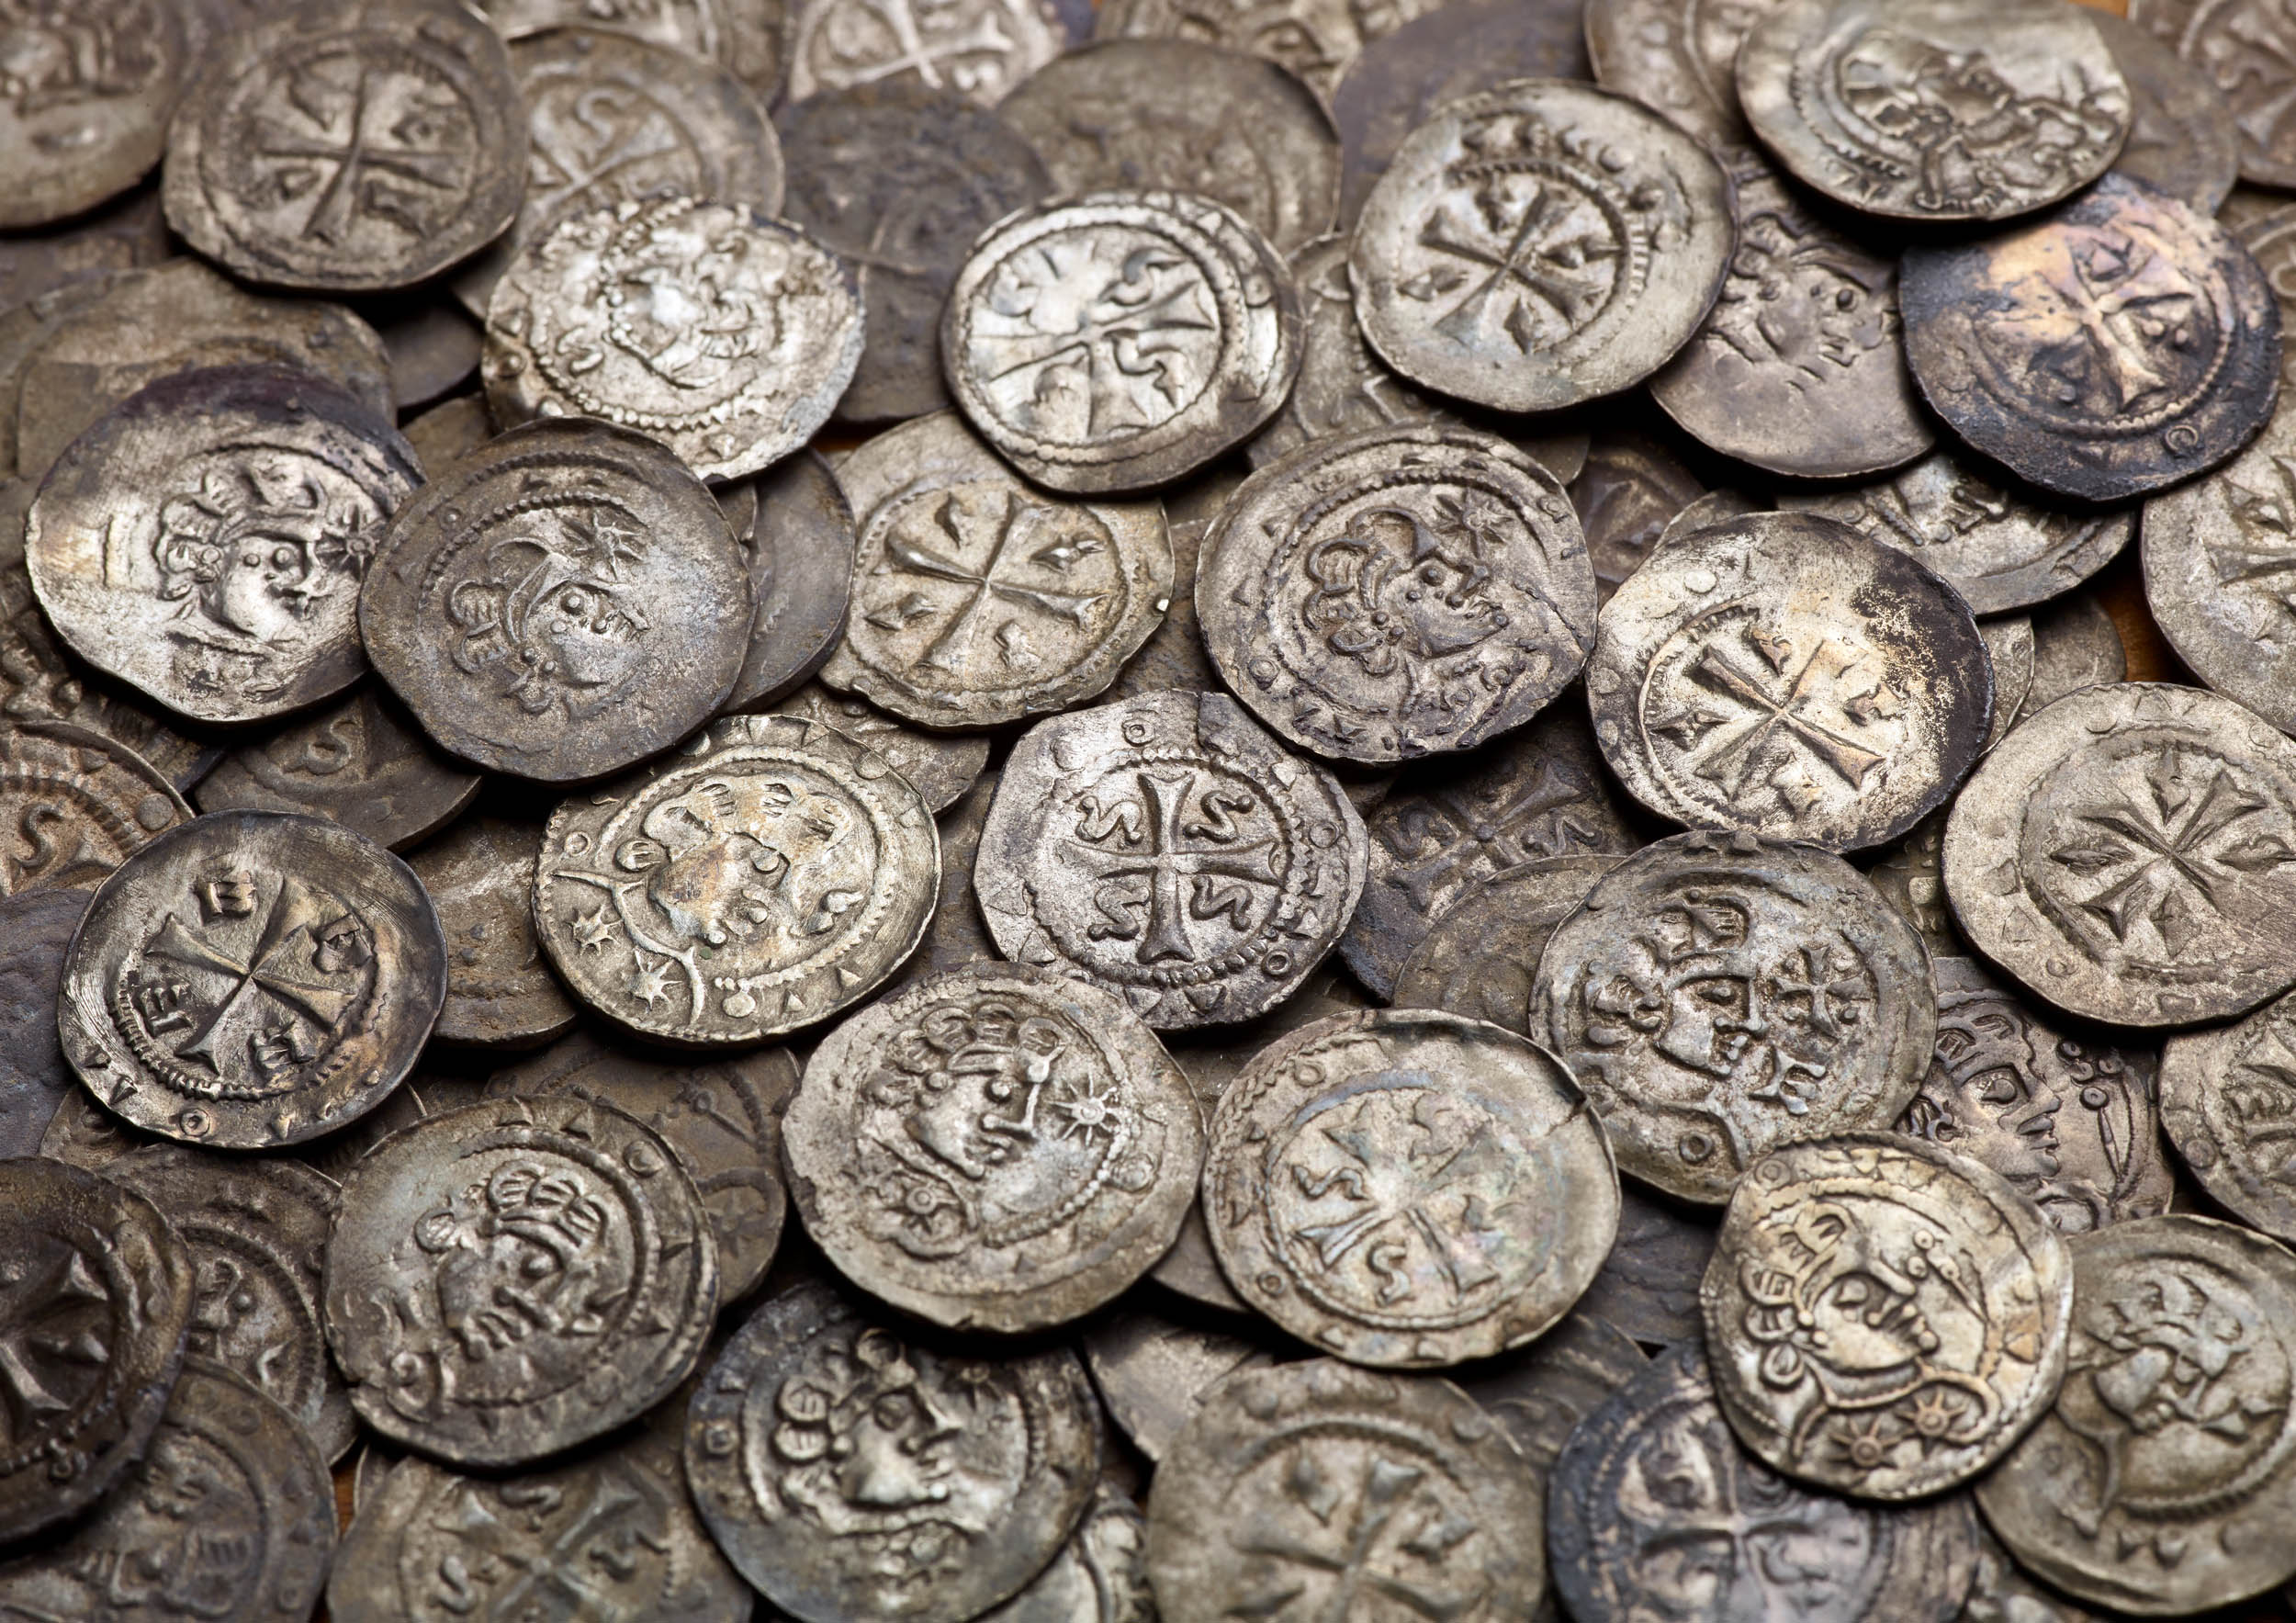  Versteckte Barschaft: Ein kleines Vermögen in Form von knapp 200 Silbermünzen wurde im Mittelalter bei Rheinberg vergraben.